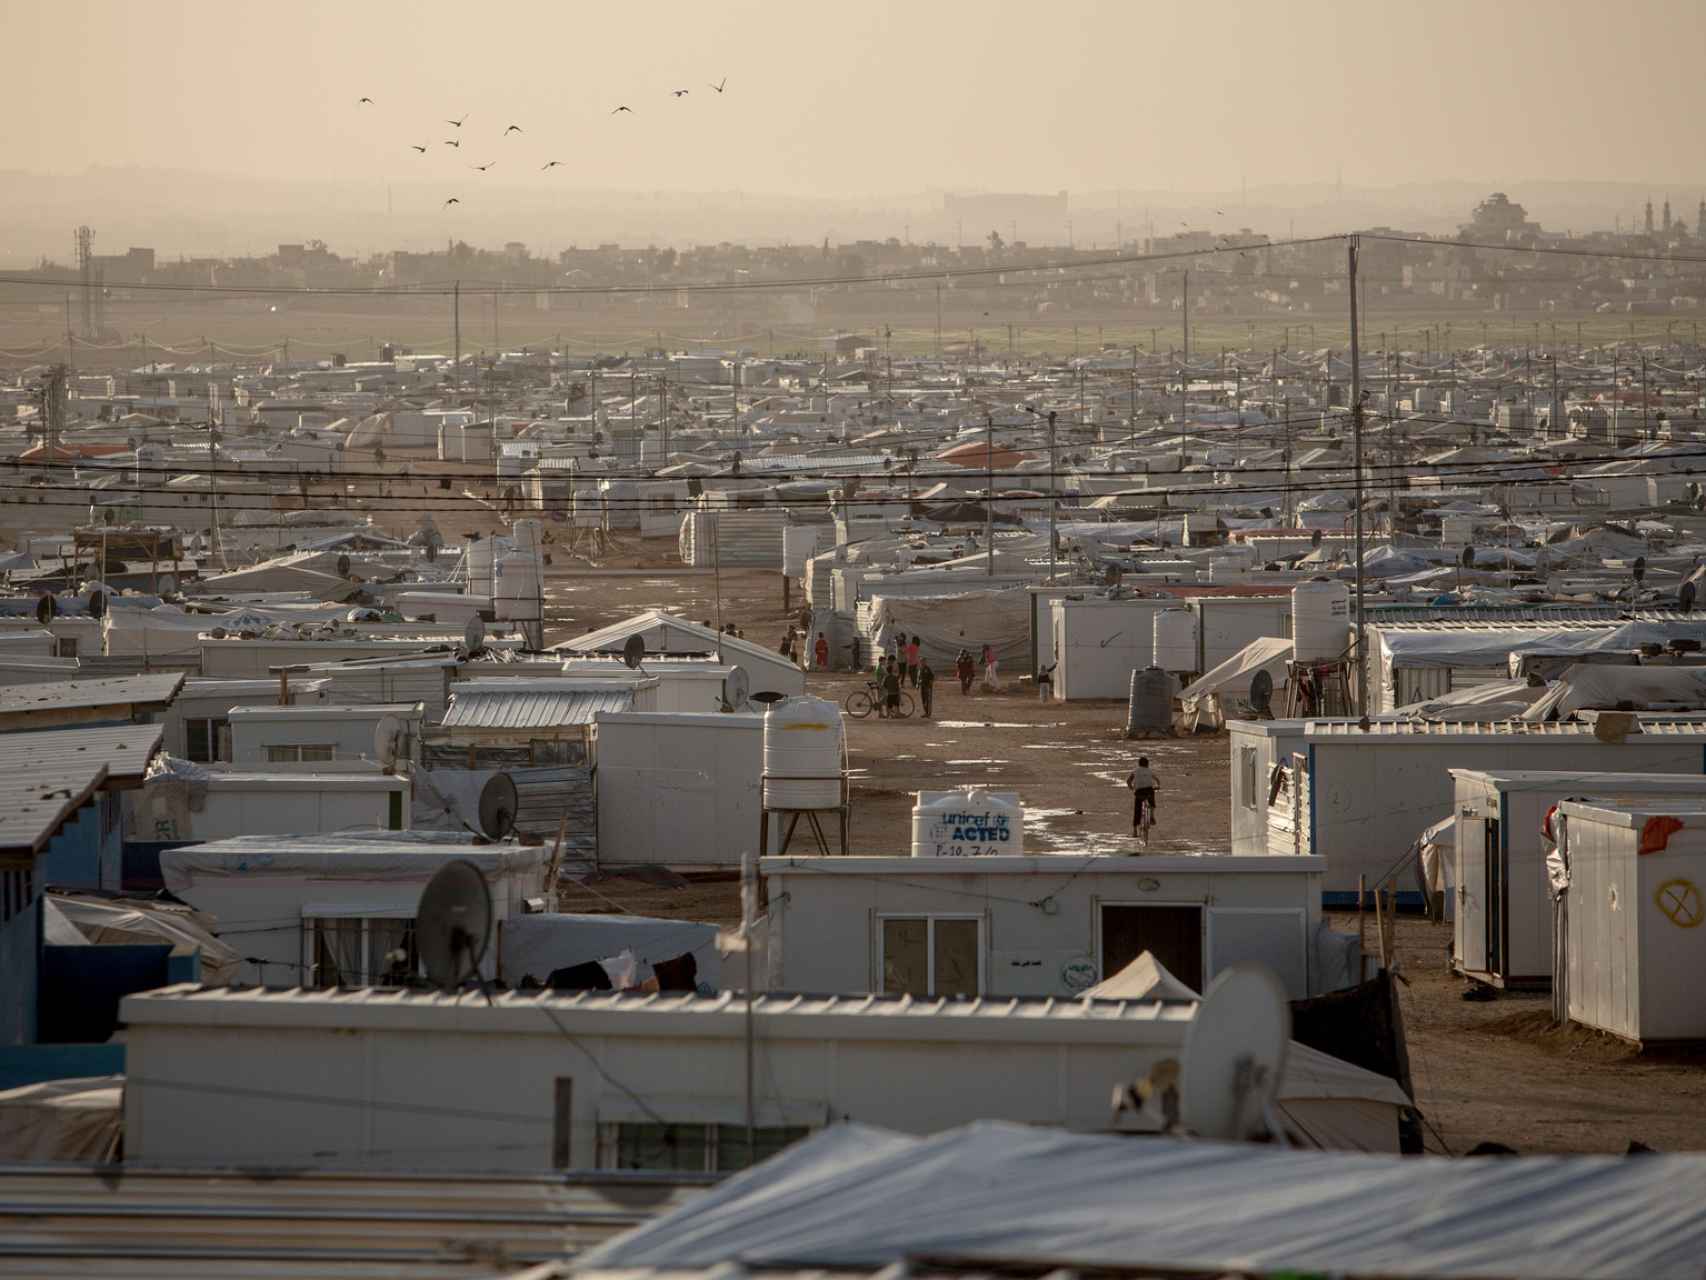 Vista aérea de Zaatari / District Zero y Oxfam Intermon